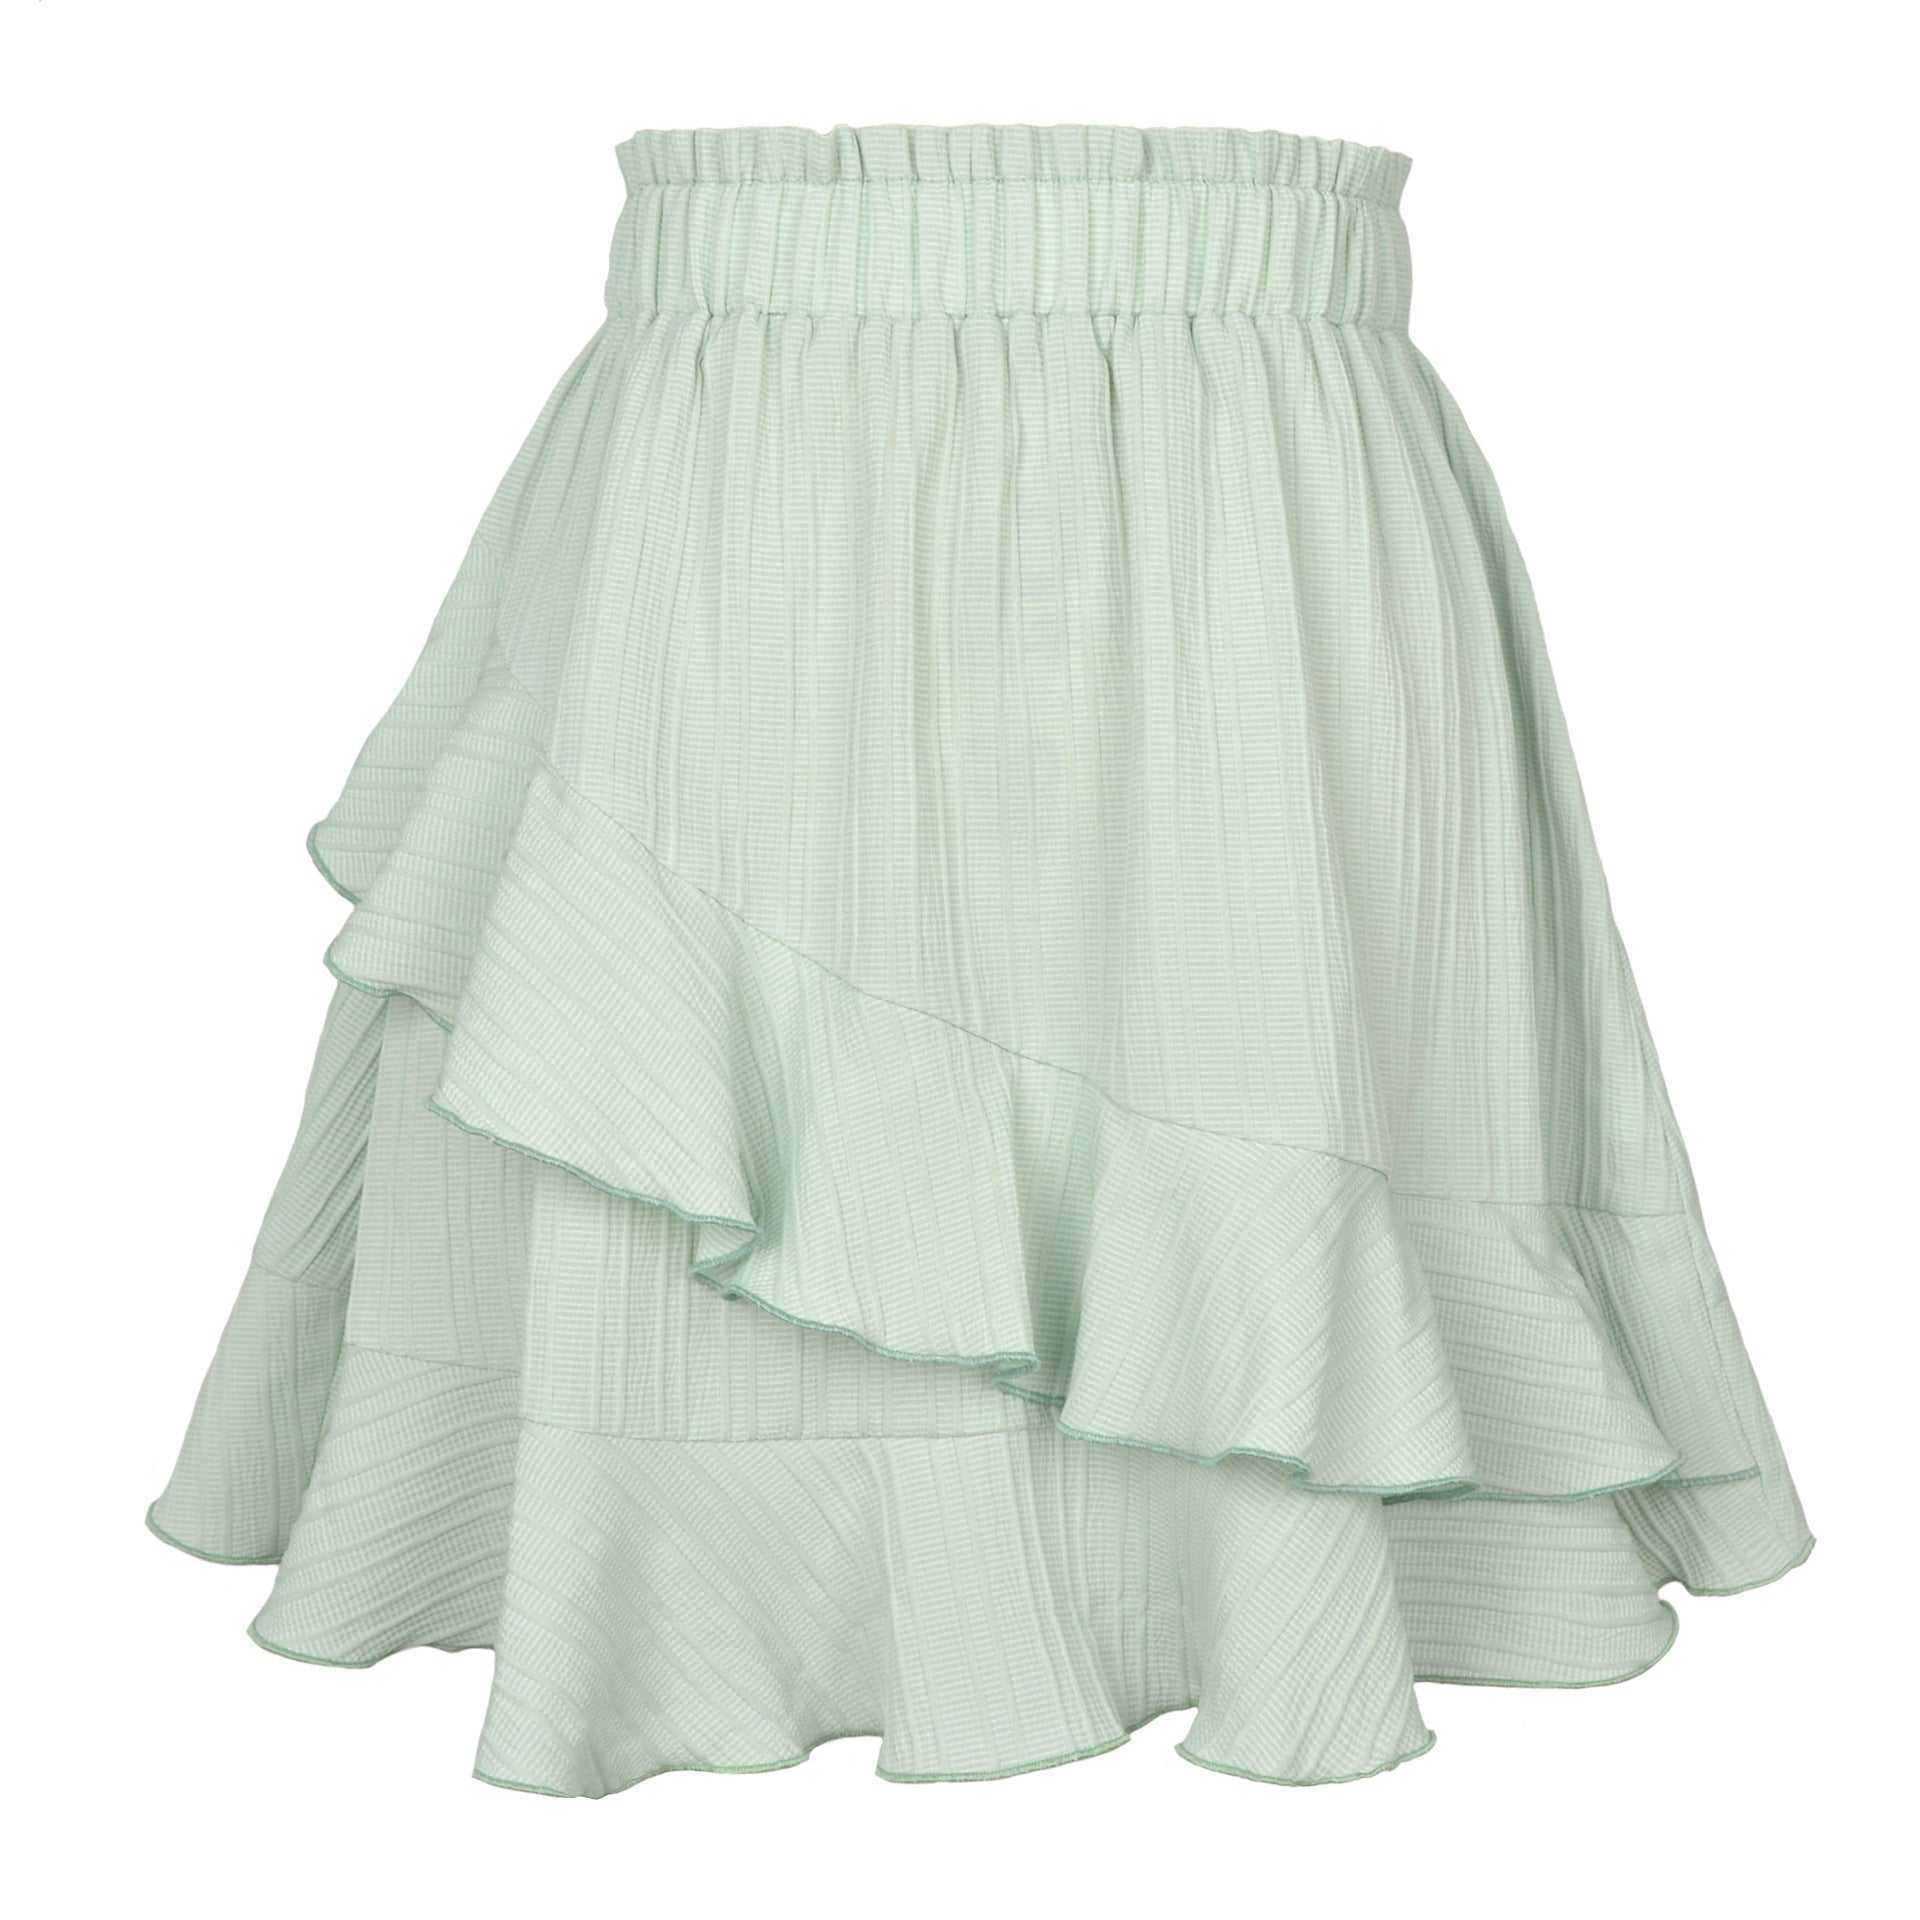 Summer Ruffled Fresh And Sweet Women's High Waist Irregular Solid Color Skirt